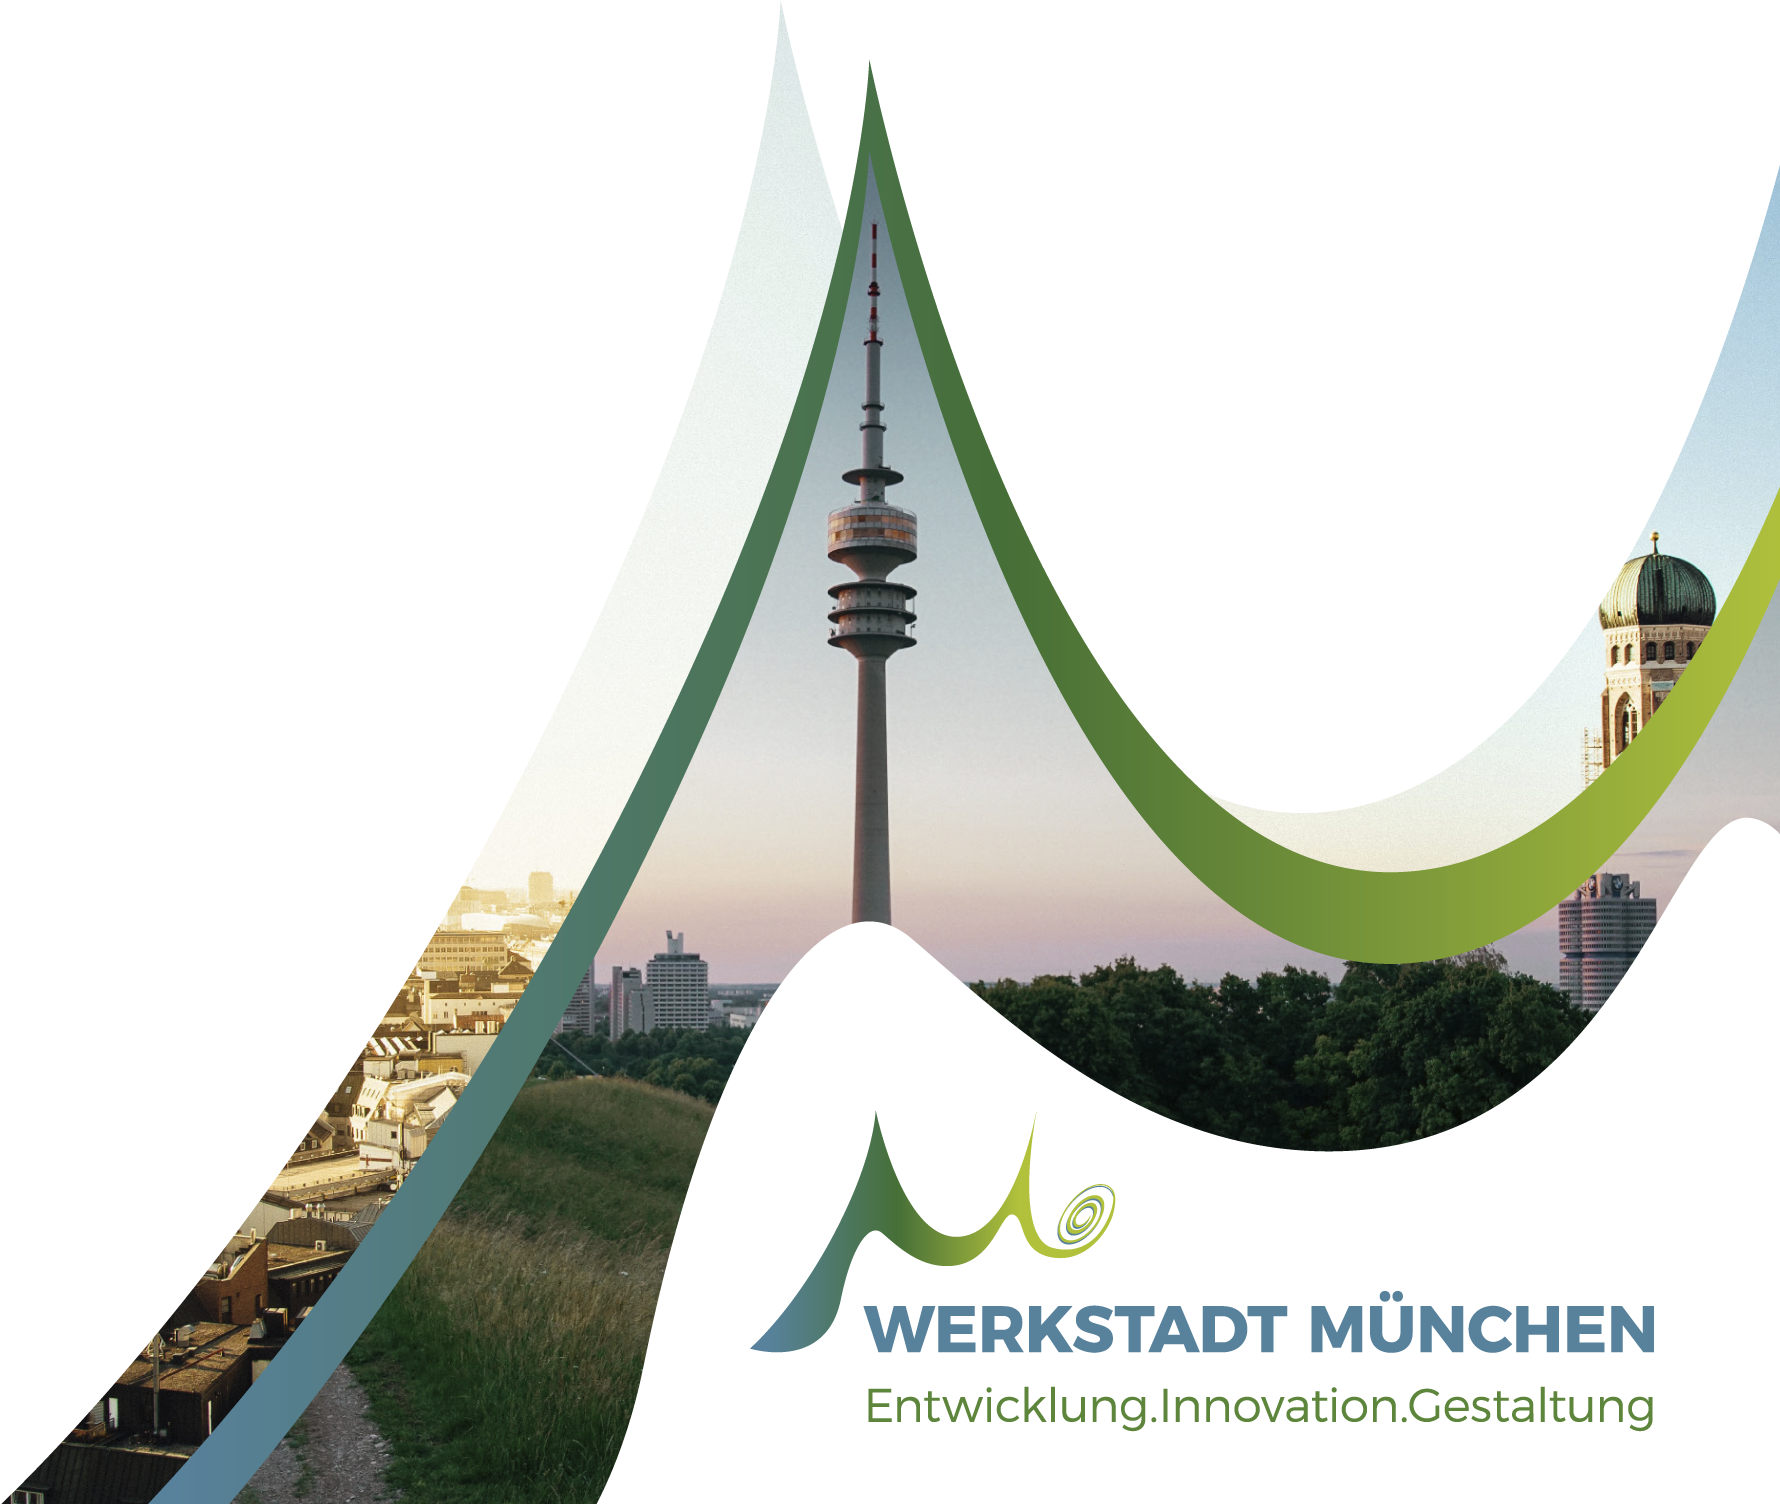 Das Logo der Werkstadt München, einer Initiative für Entwicklung, Innovation und Gestaltung der Stadt München. Es wird durch ein schwungvollen M in einem grün-blauen-Verlauf dargestellt. Im Header wird das M über dem Logo nochmal mehrmals in groß platziert und mit Bildern aus München gefüllt sowie mit dem blau-grünen verlauf, der sich durch die gesamte Gestaltung zieht.